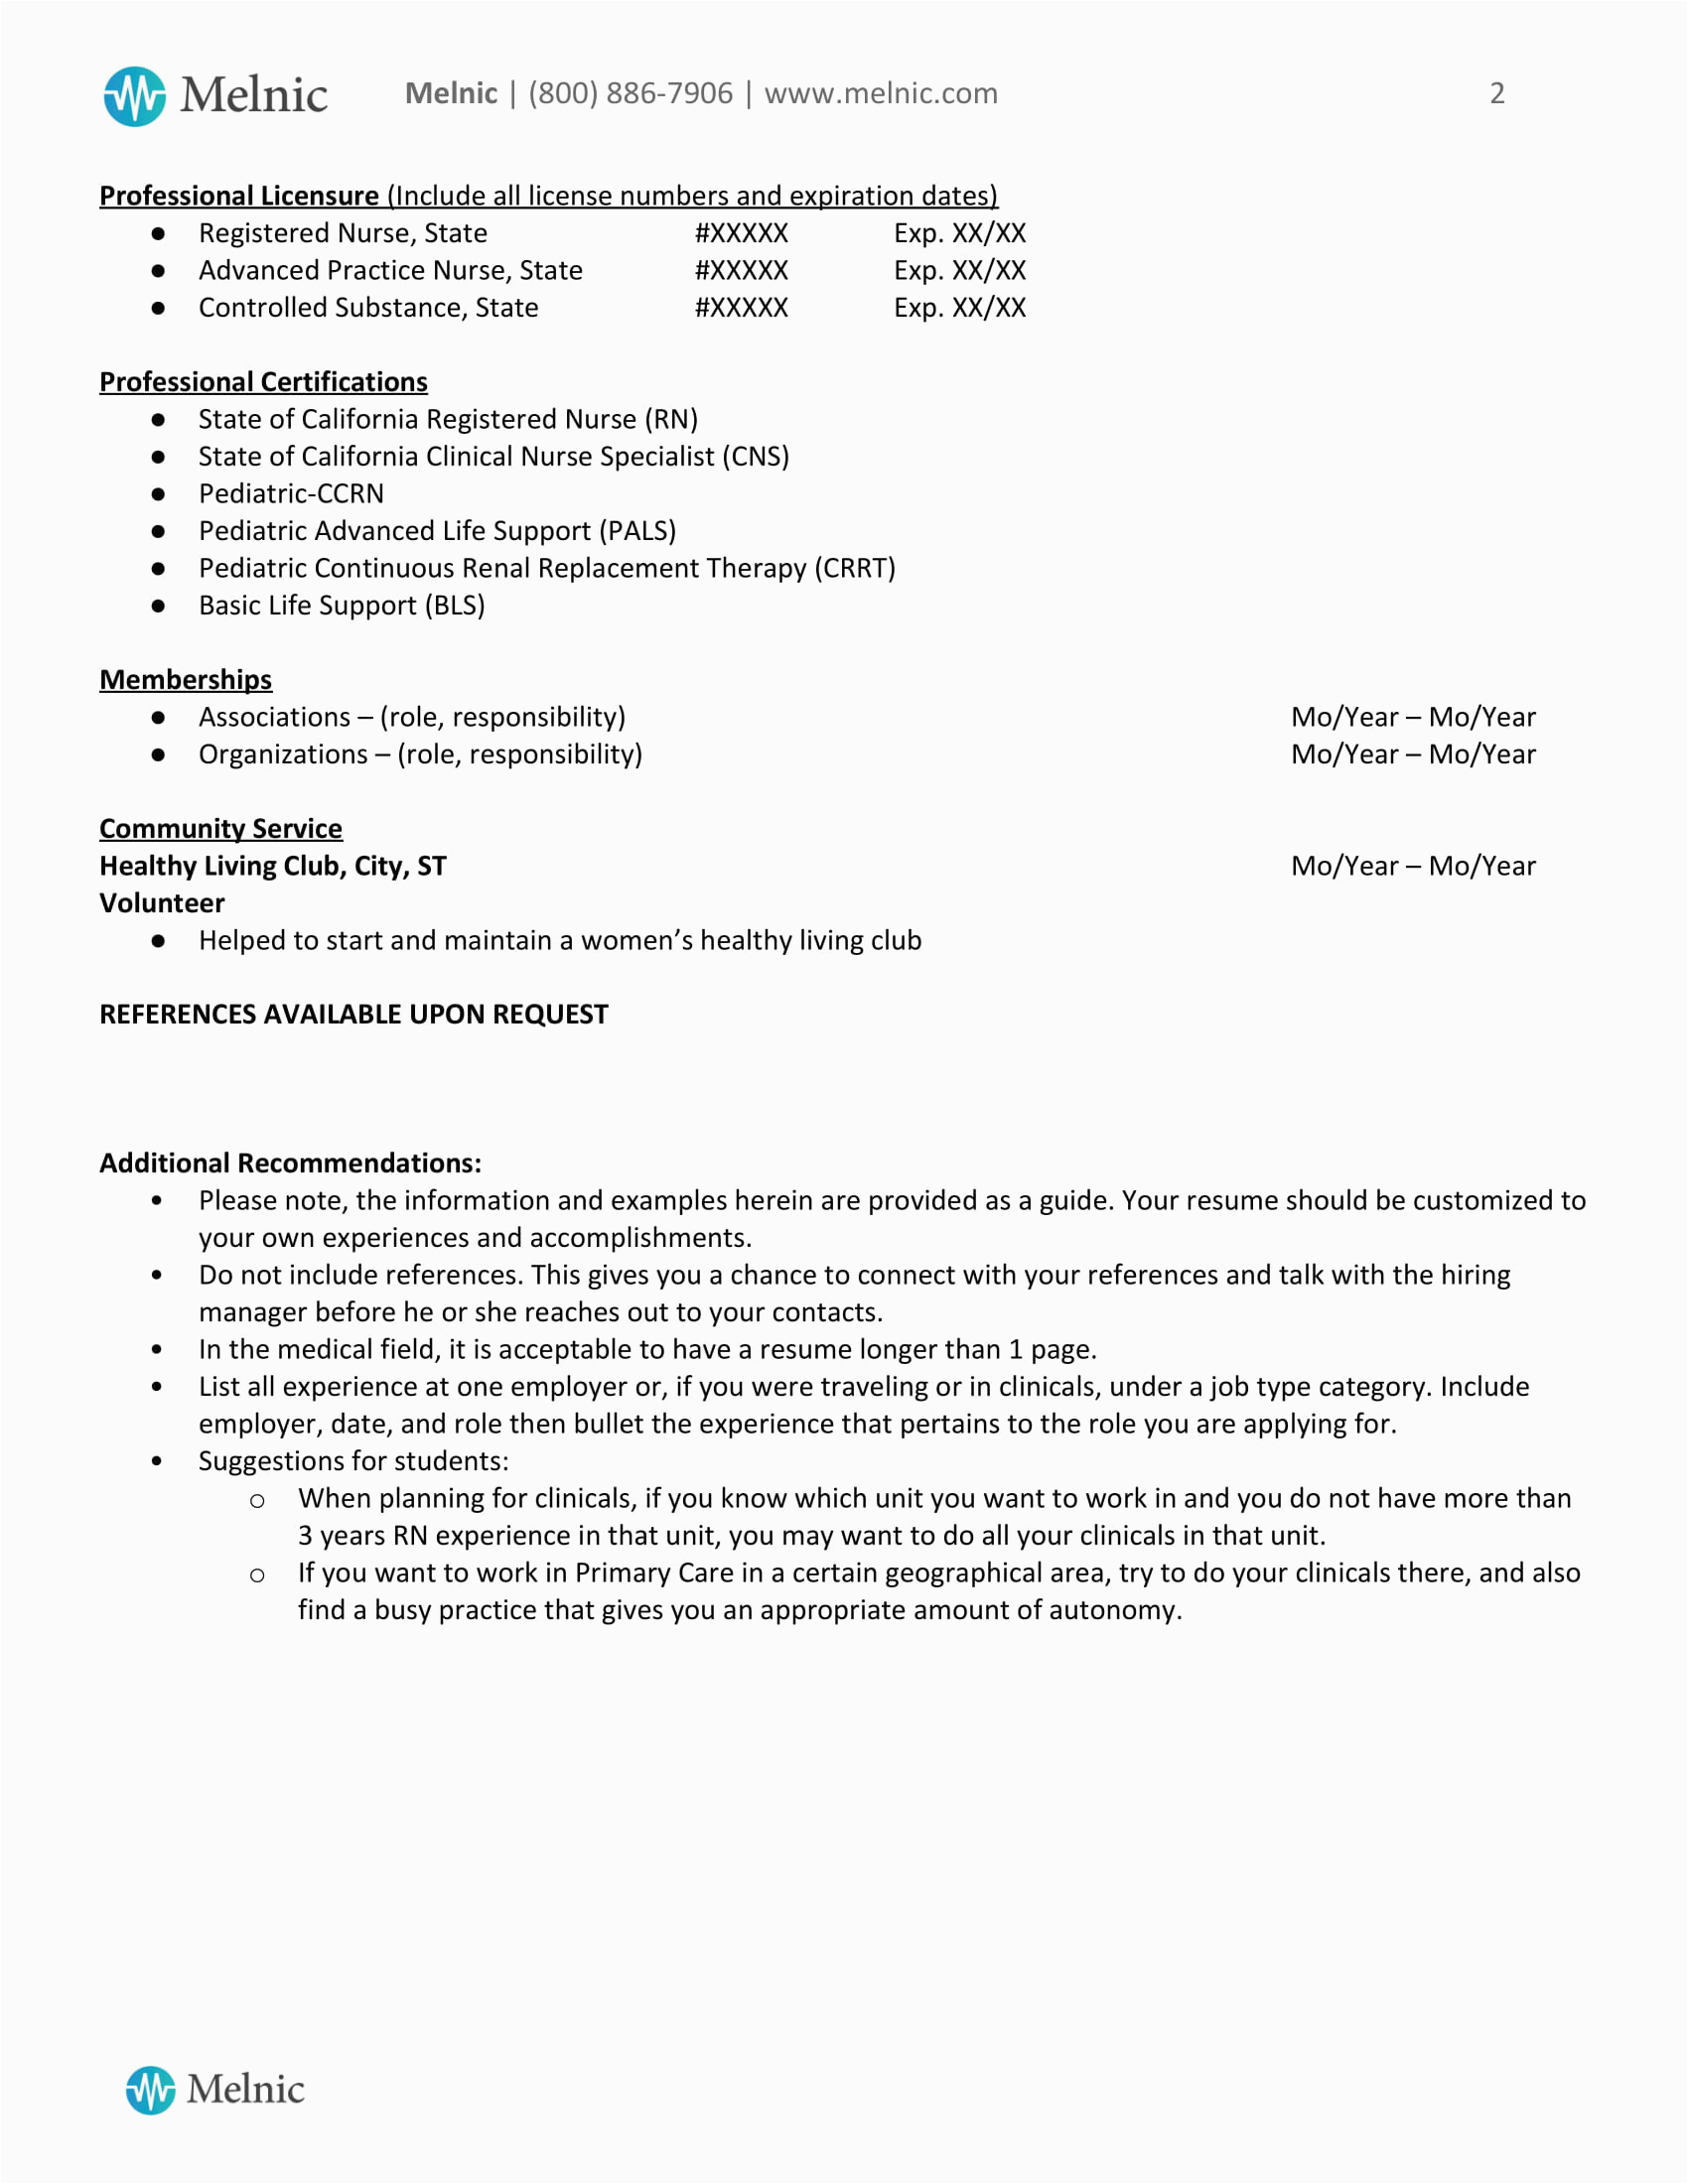 clinical nurse specialist sample resume